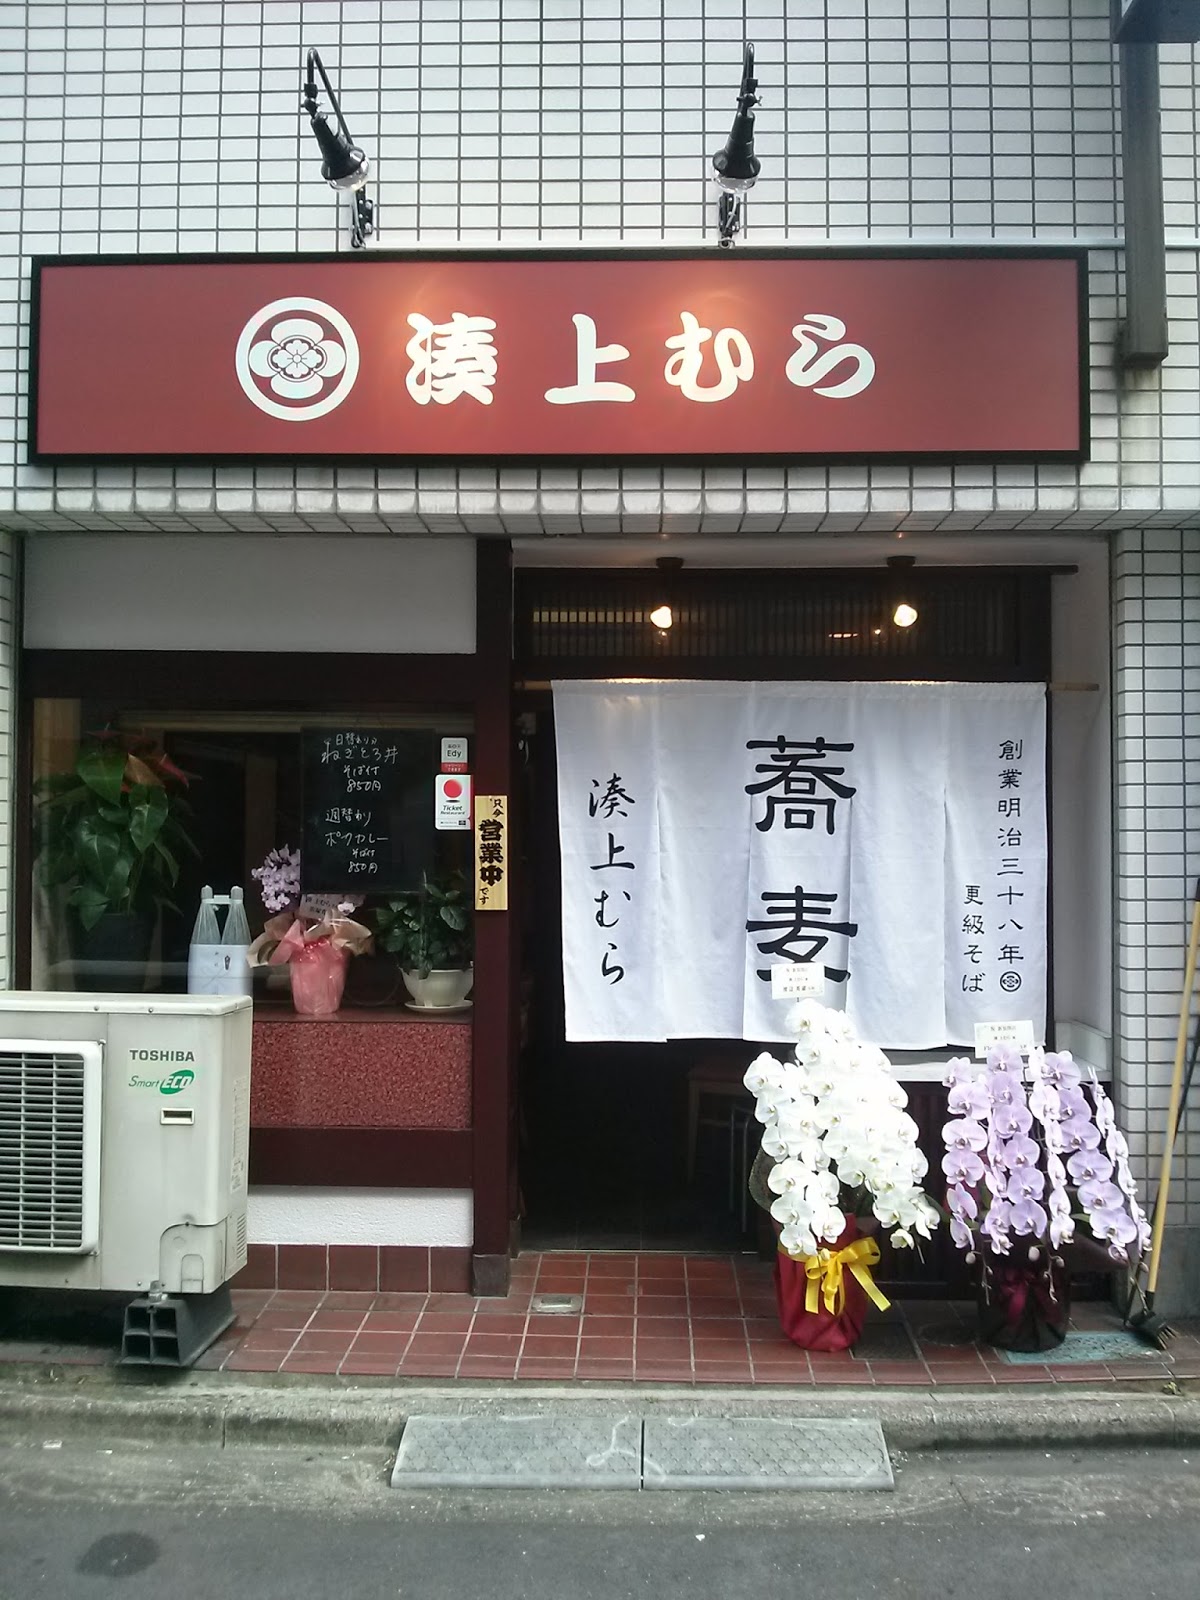 上村そば店1.2F蕎麦居酒屋のイメージ